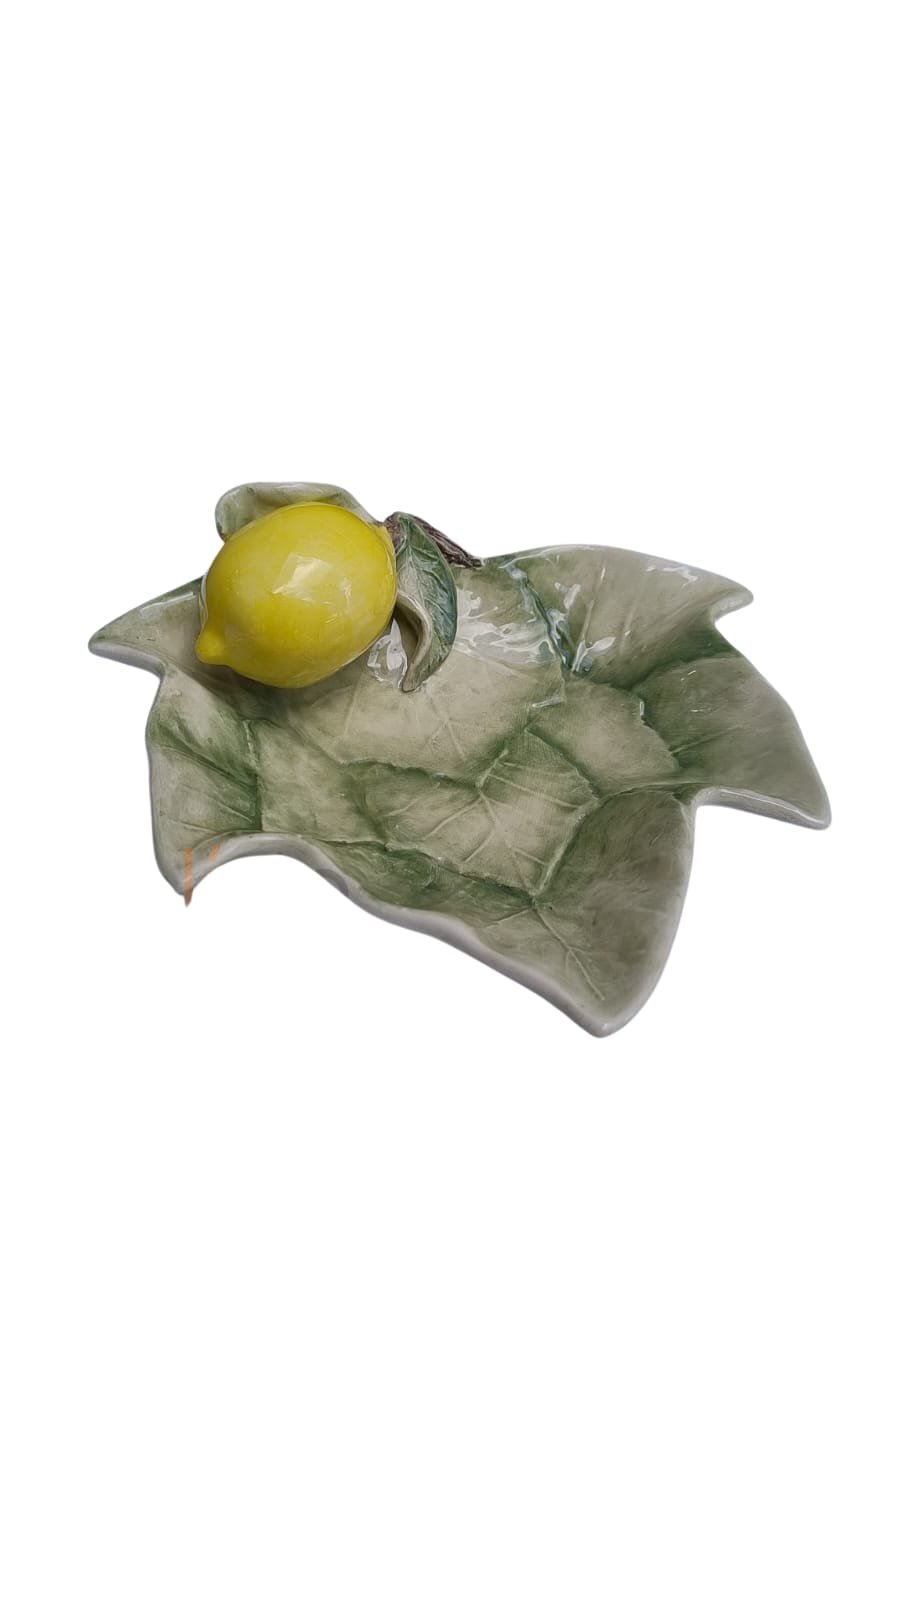 Petisqueira Folha de Uva com Aplique de Limão em Cerâmica - Pastore Faiança Brasil - 1